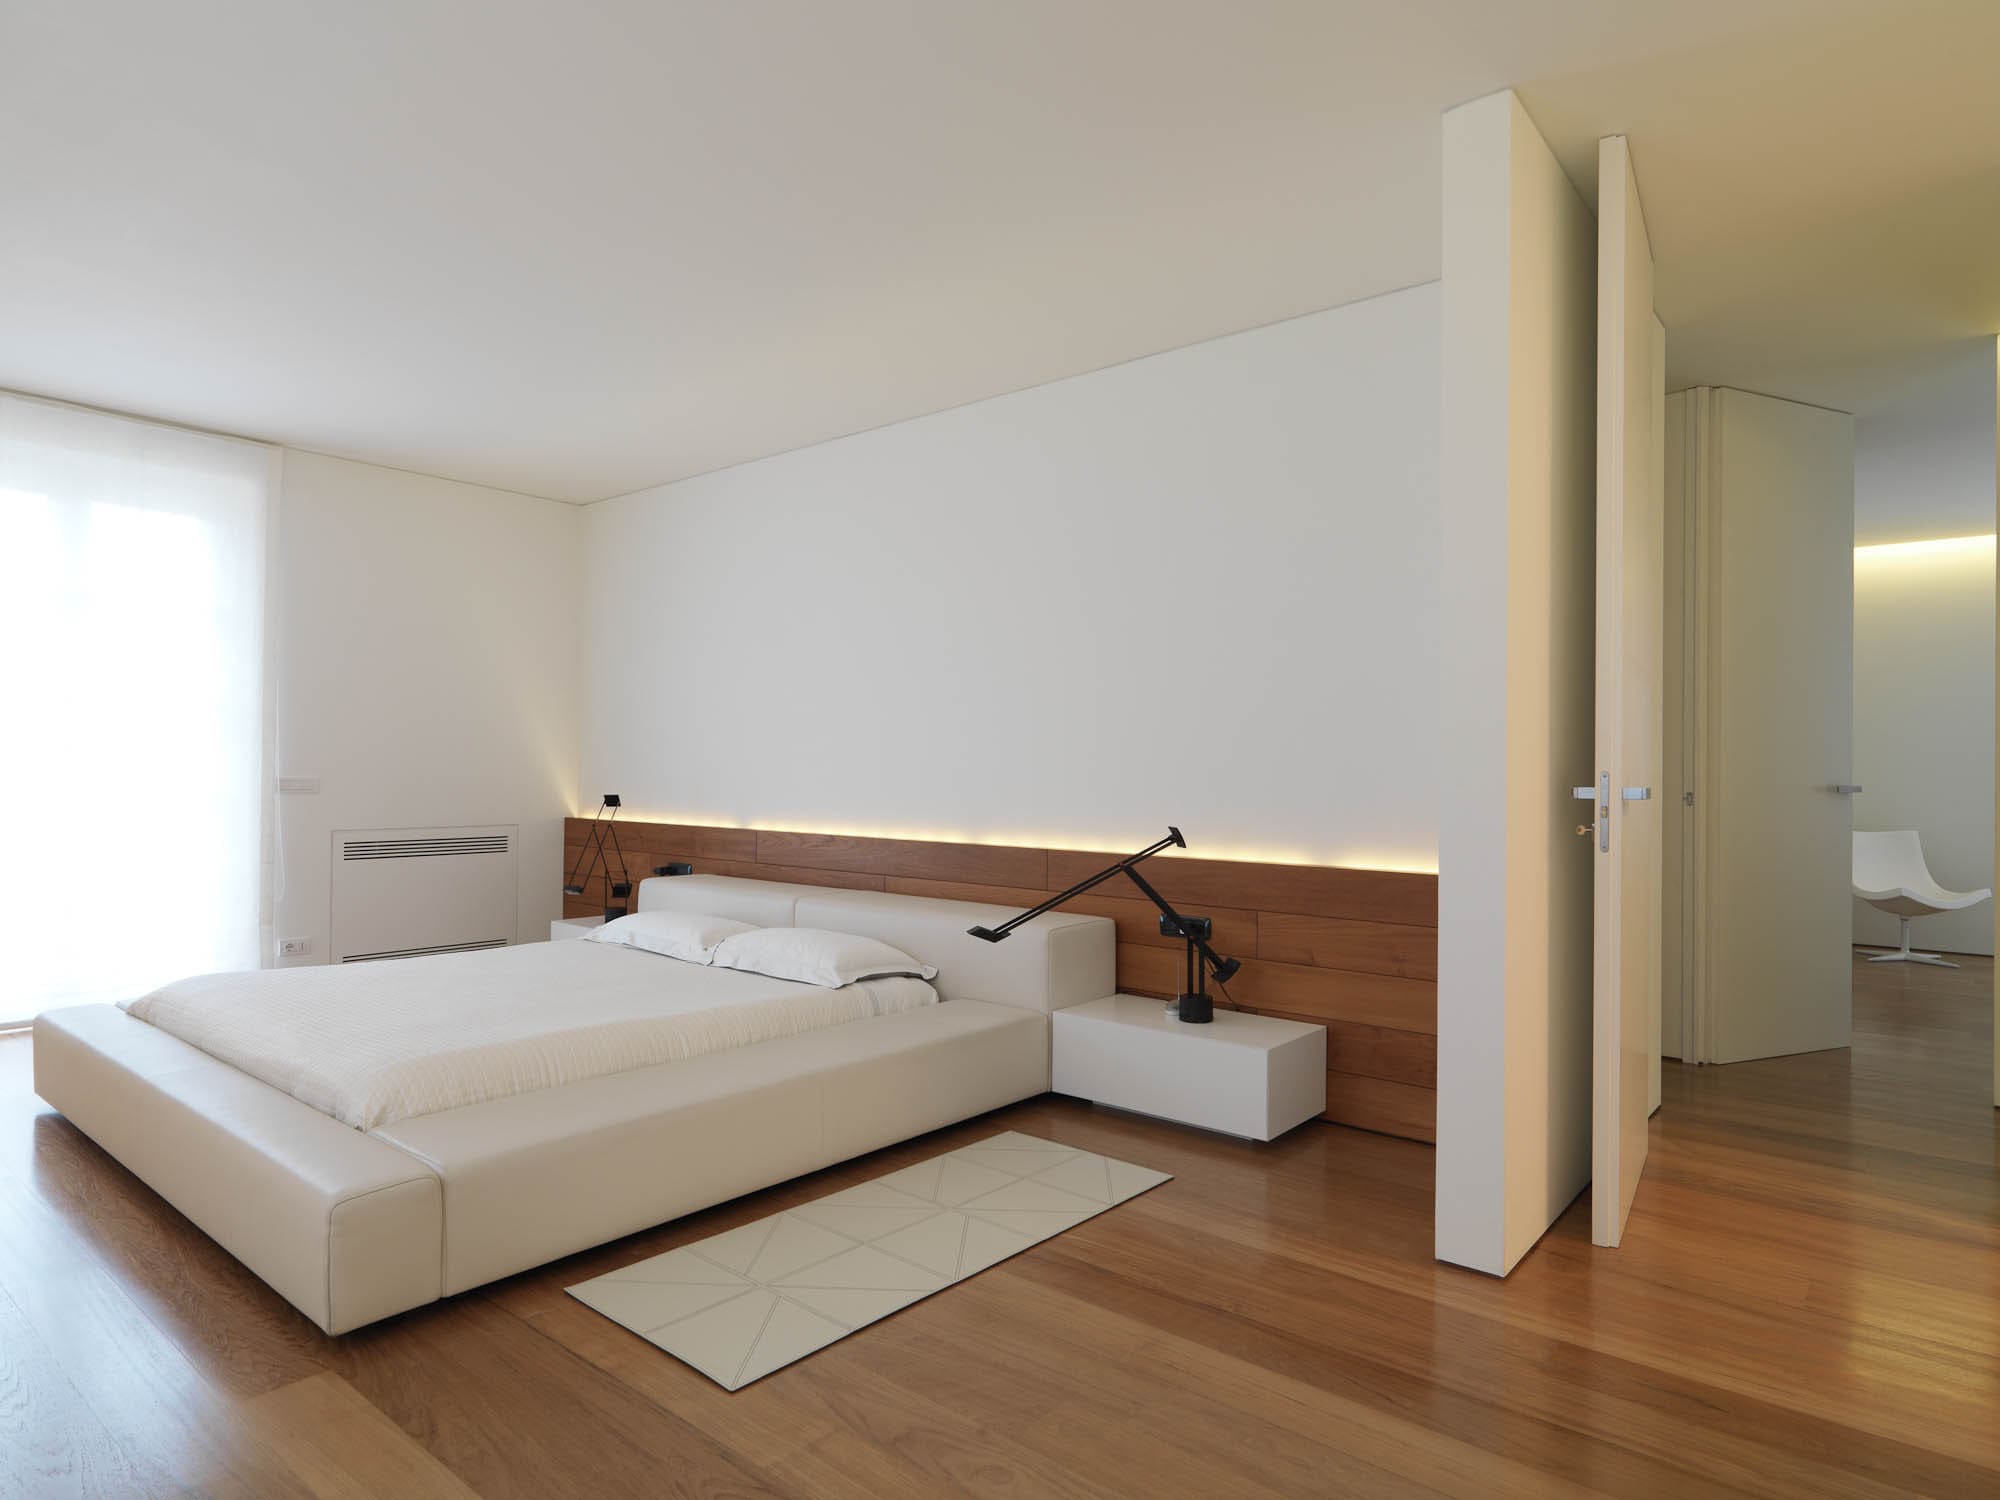 минималистички намештај за спаваће собе